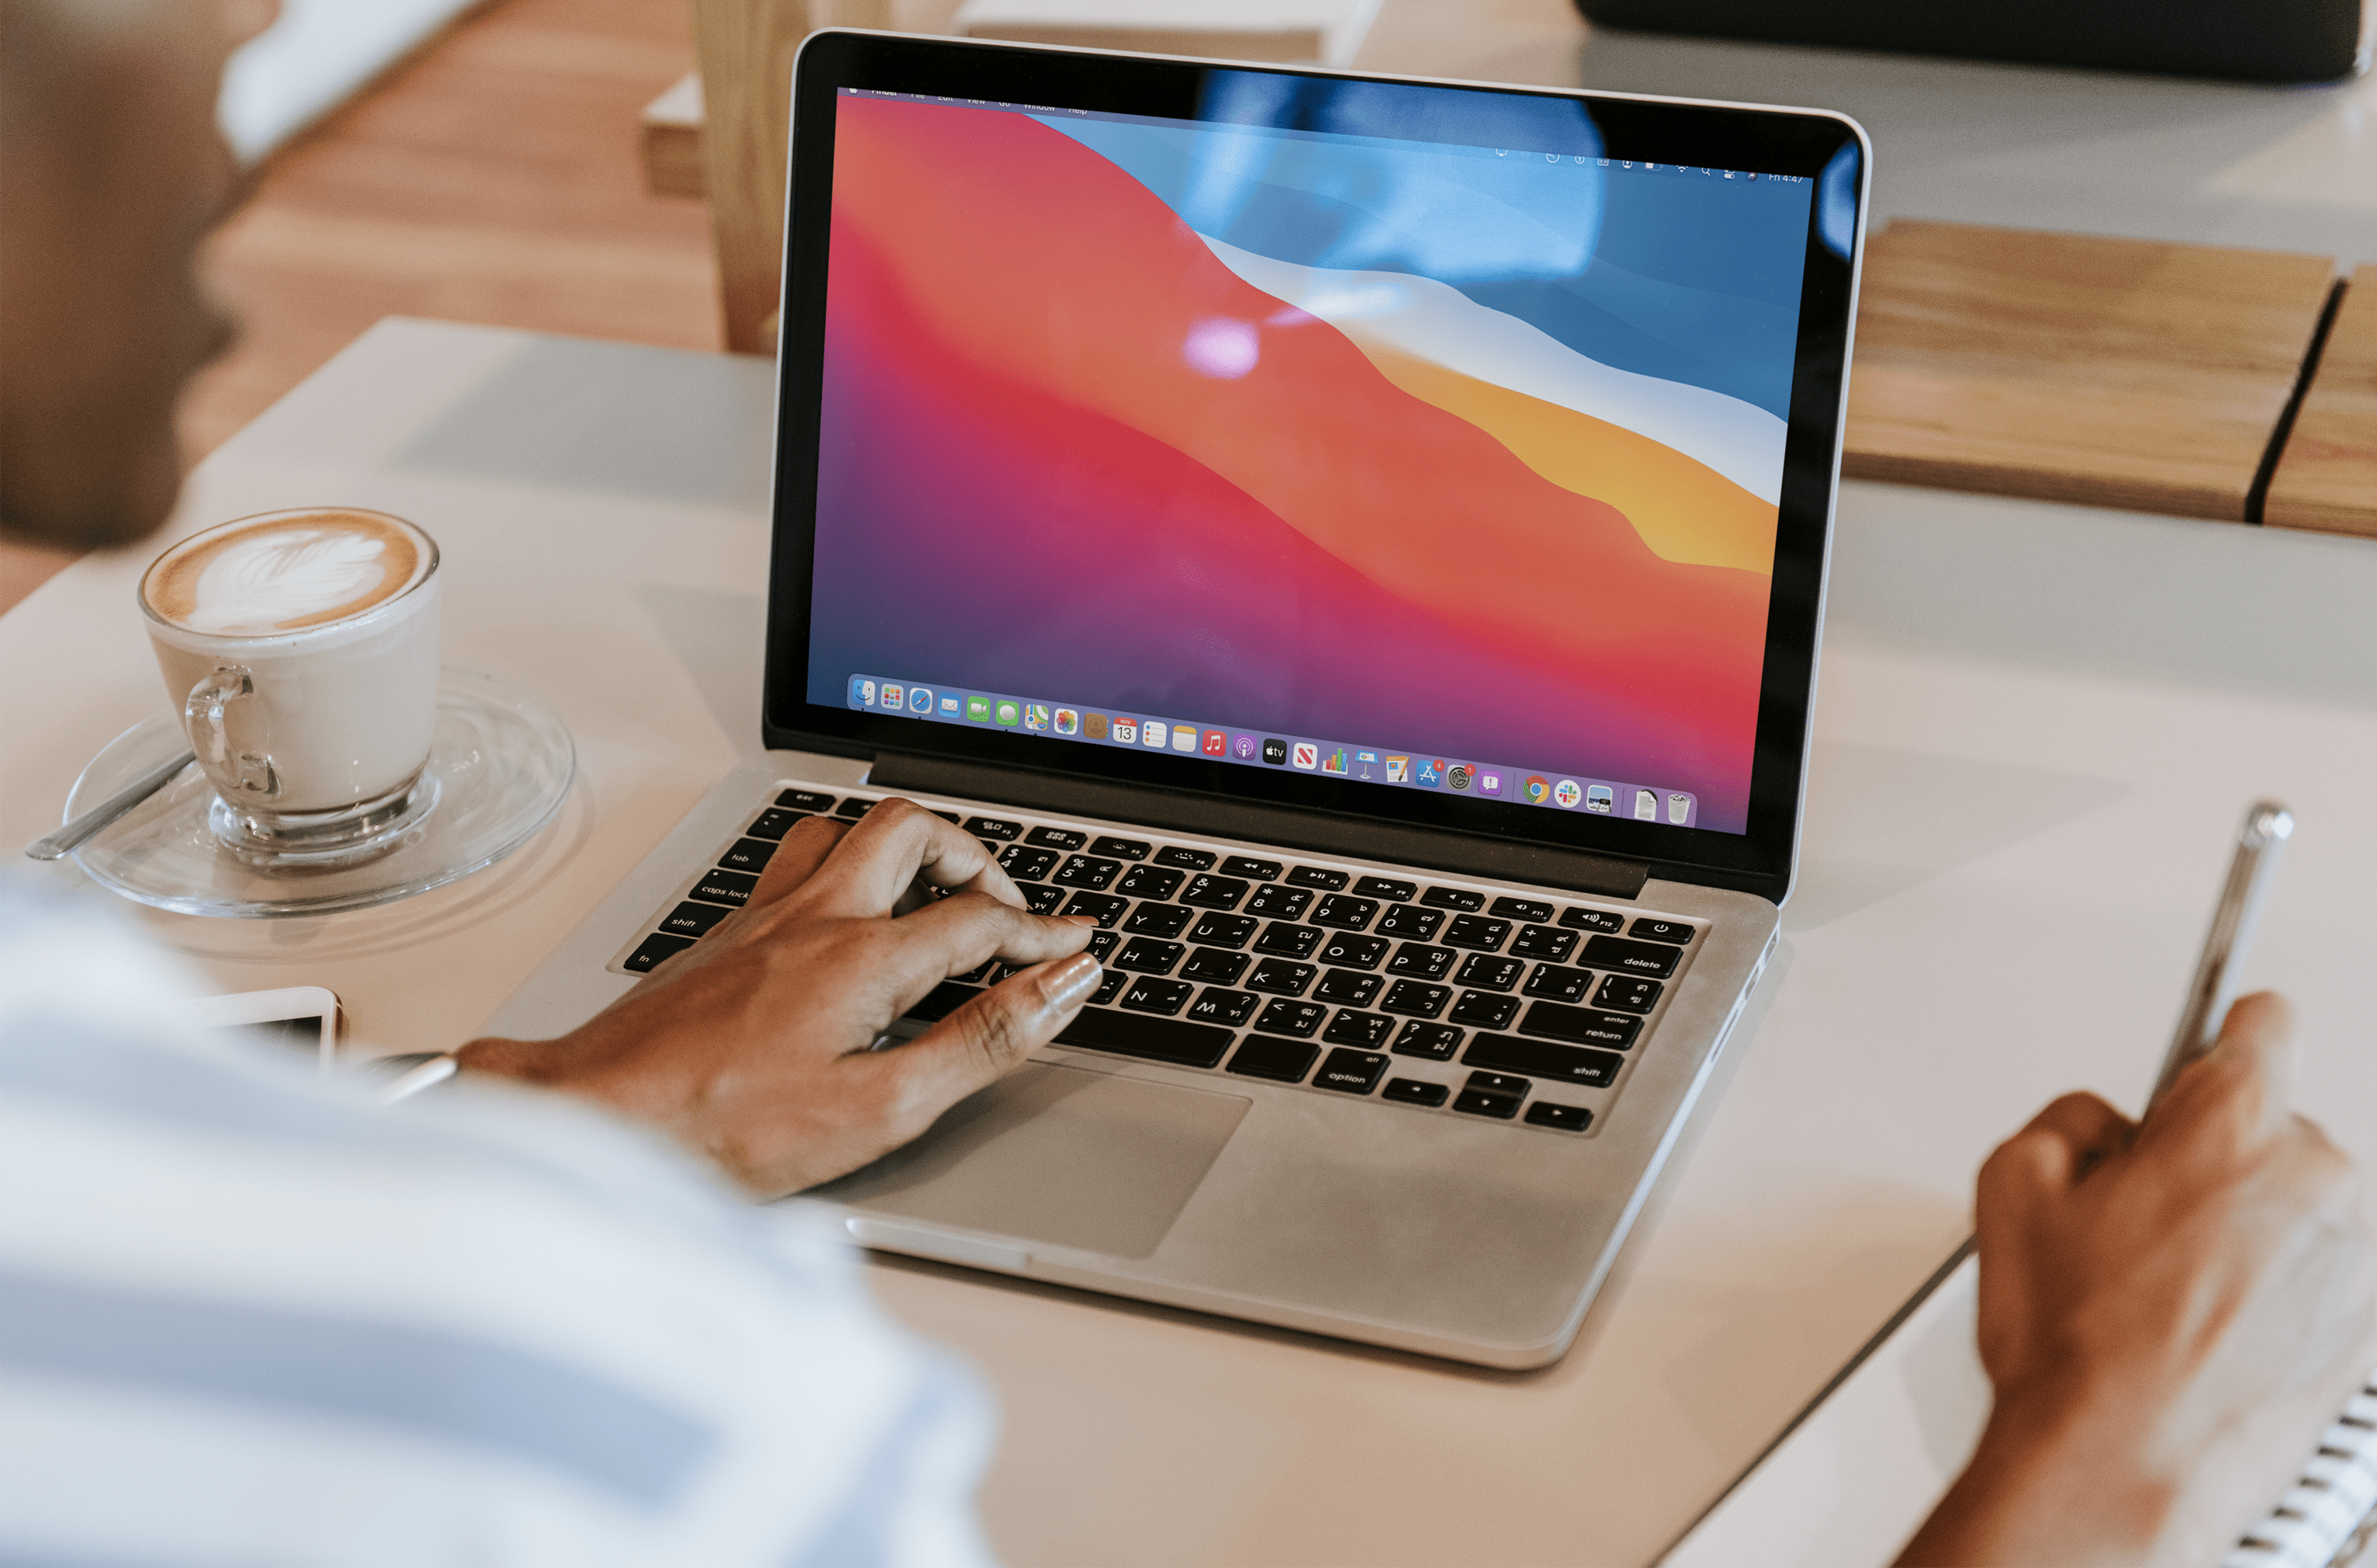 Come eliminare l'app di posta su un Mac